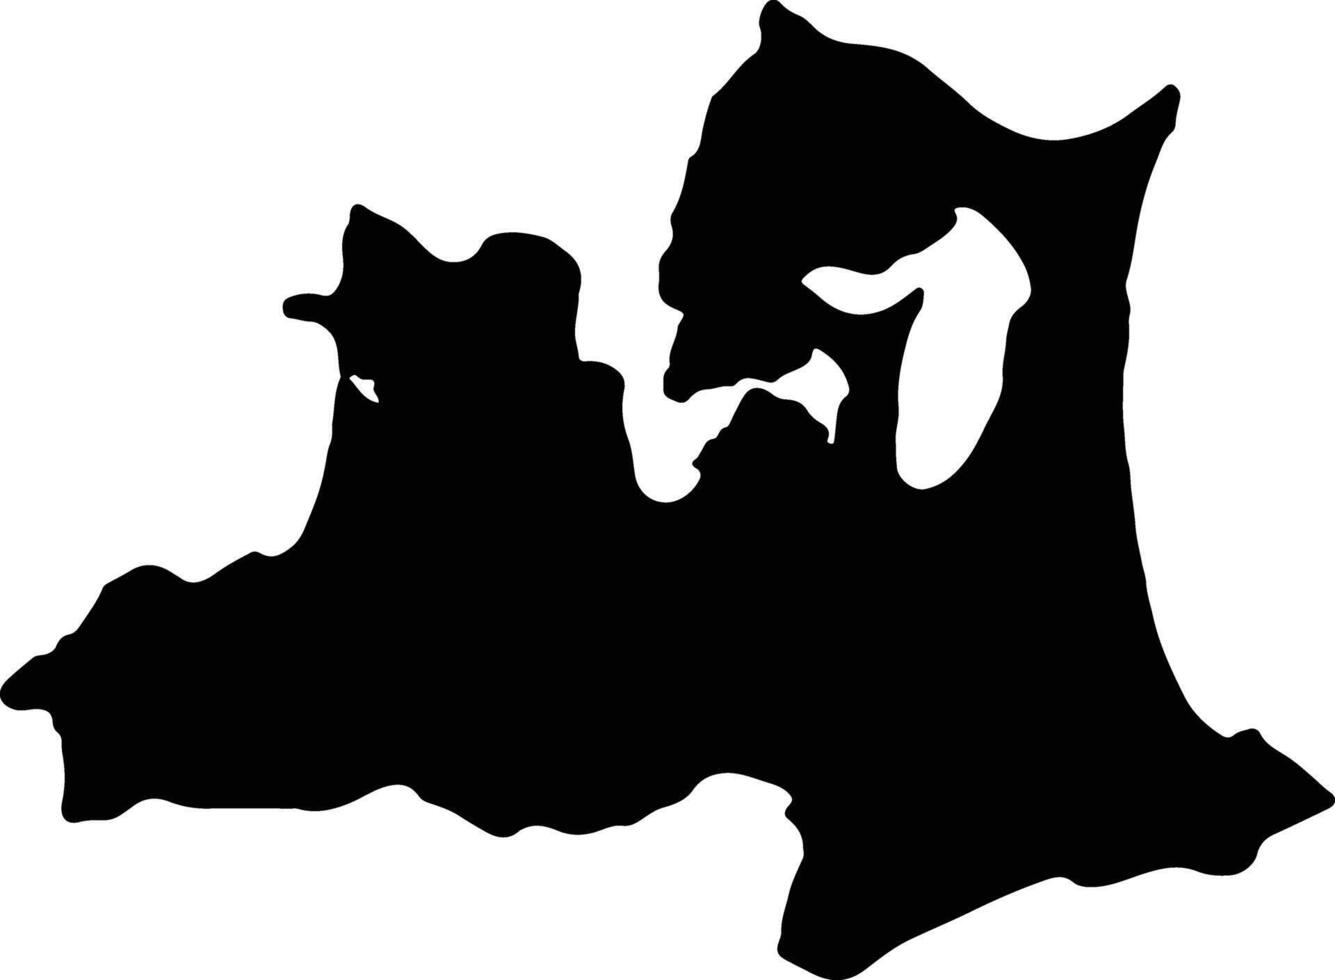 aomori Giappone silhouette carta geografica vettore